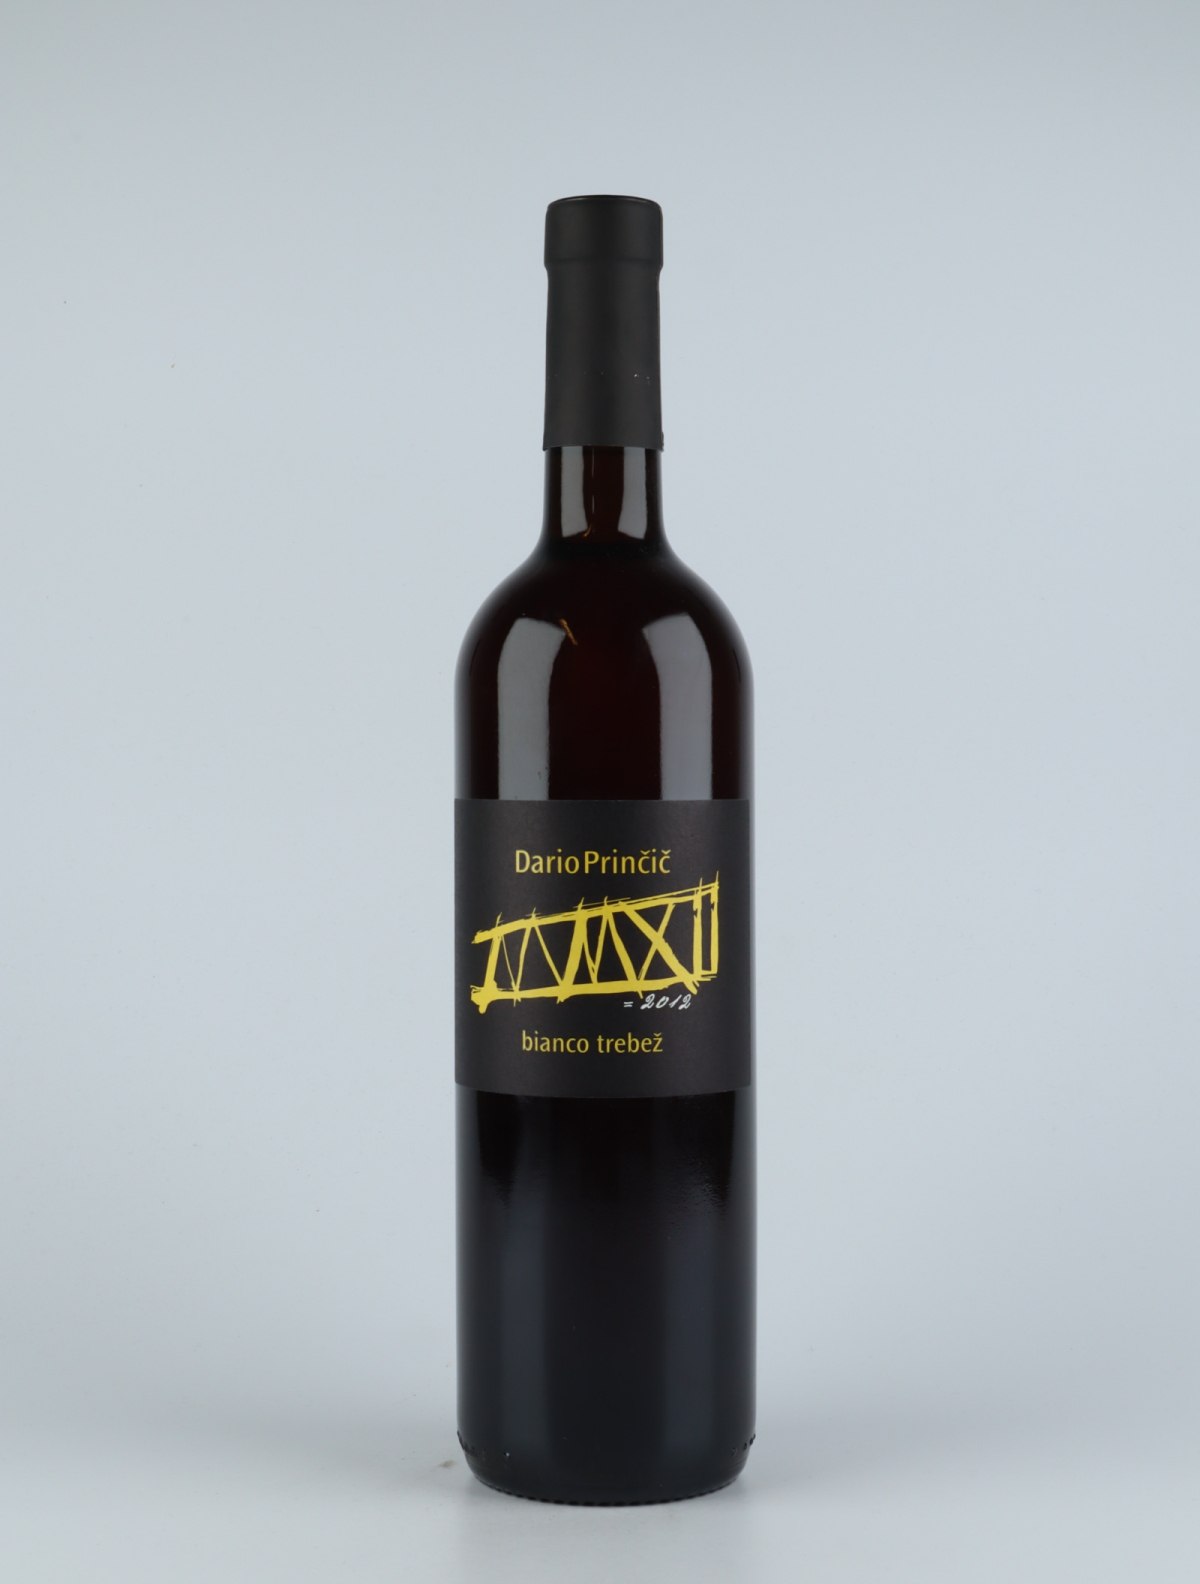 A bottle 2012 Bianco Trebez Selezione Orange wine from Dario Princic, Friuli in Italy